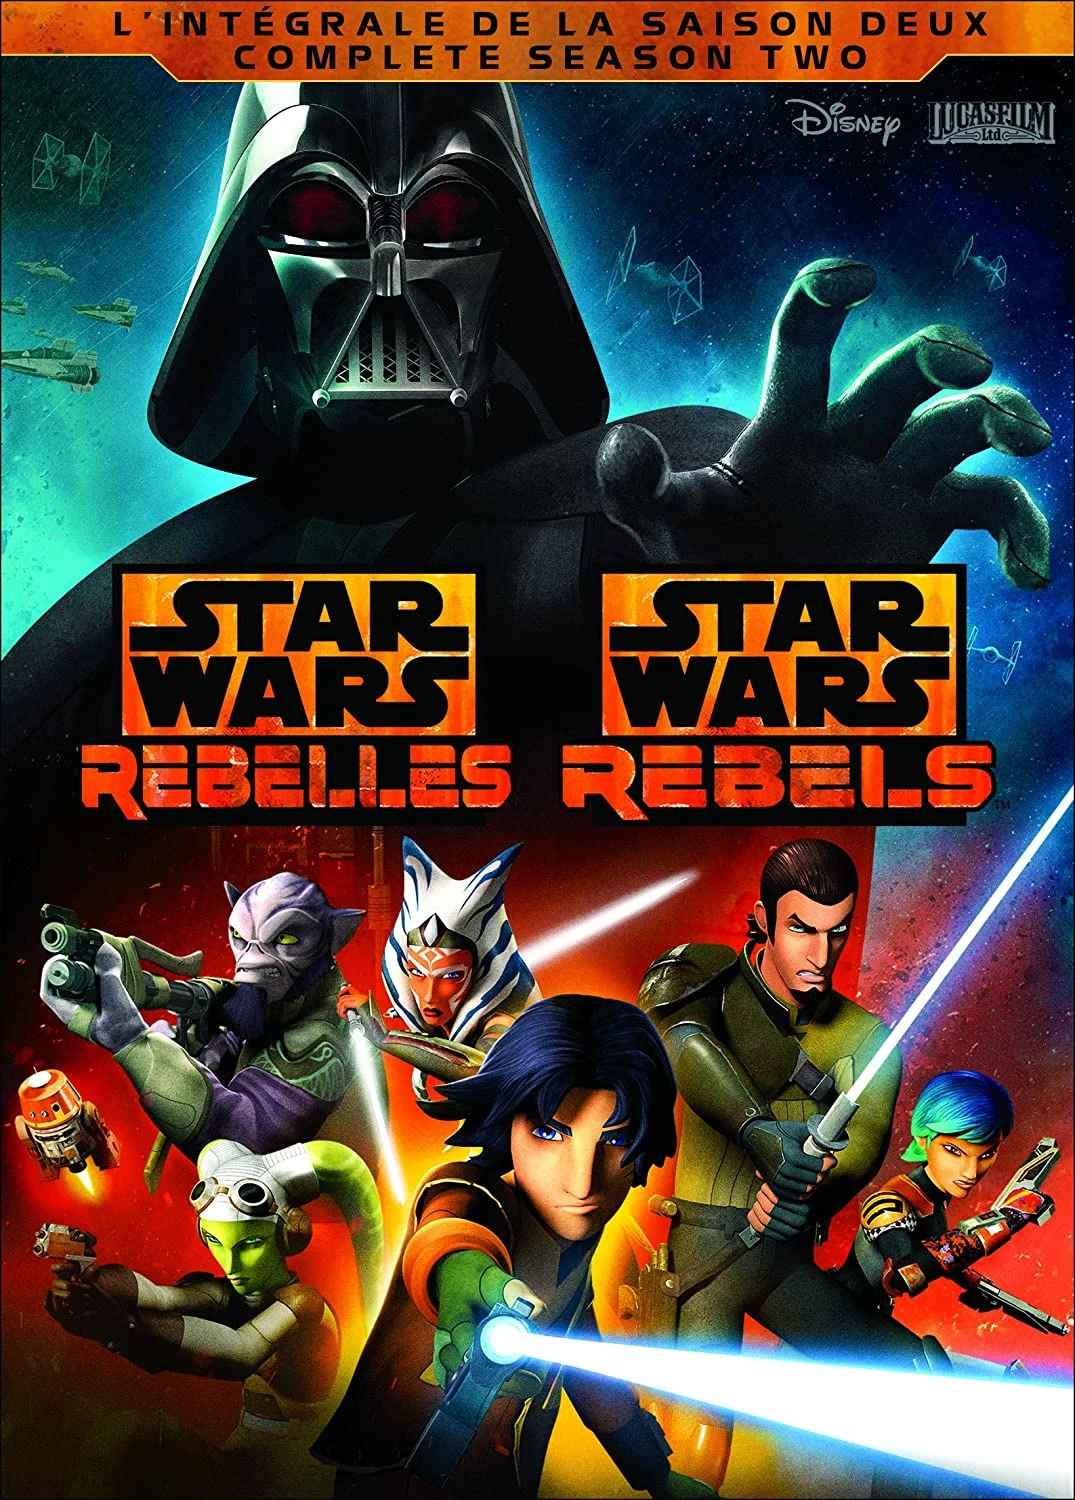 Star Wars Rebels: S2 (DVD) – Bilingual on MovieShack